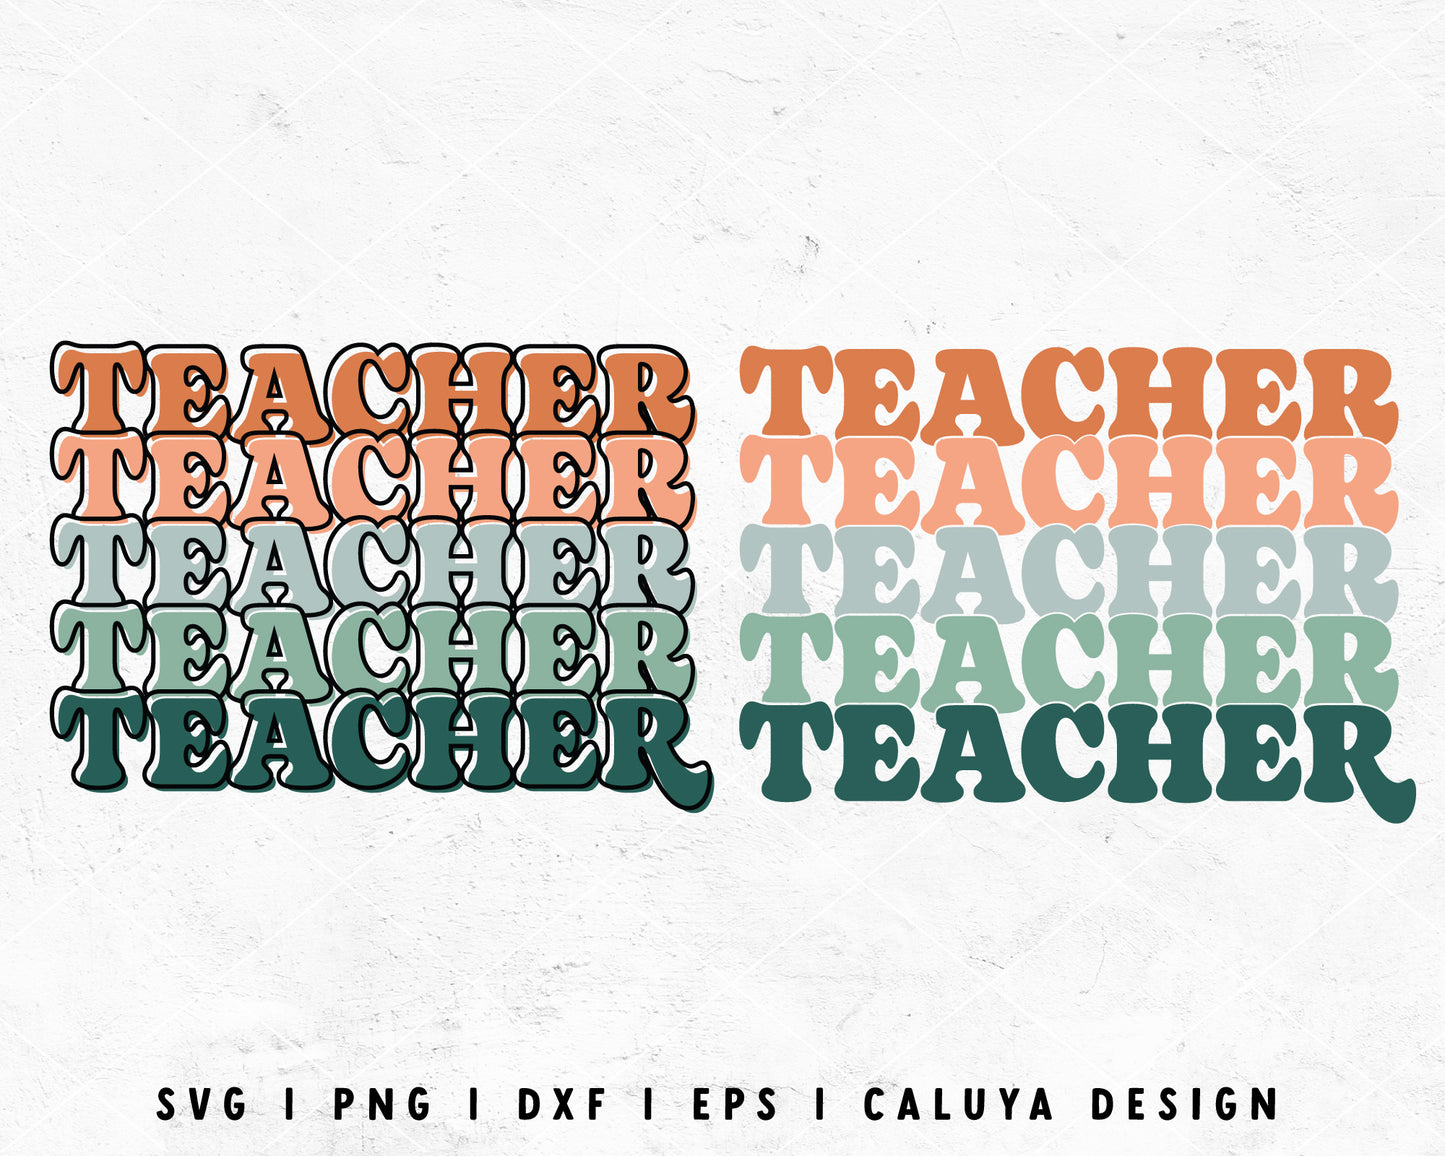 FREE Stacked Teacher SVG | Teacher Shirt SVG